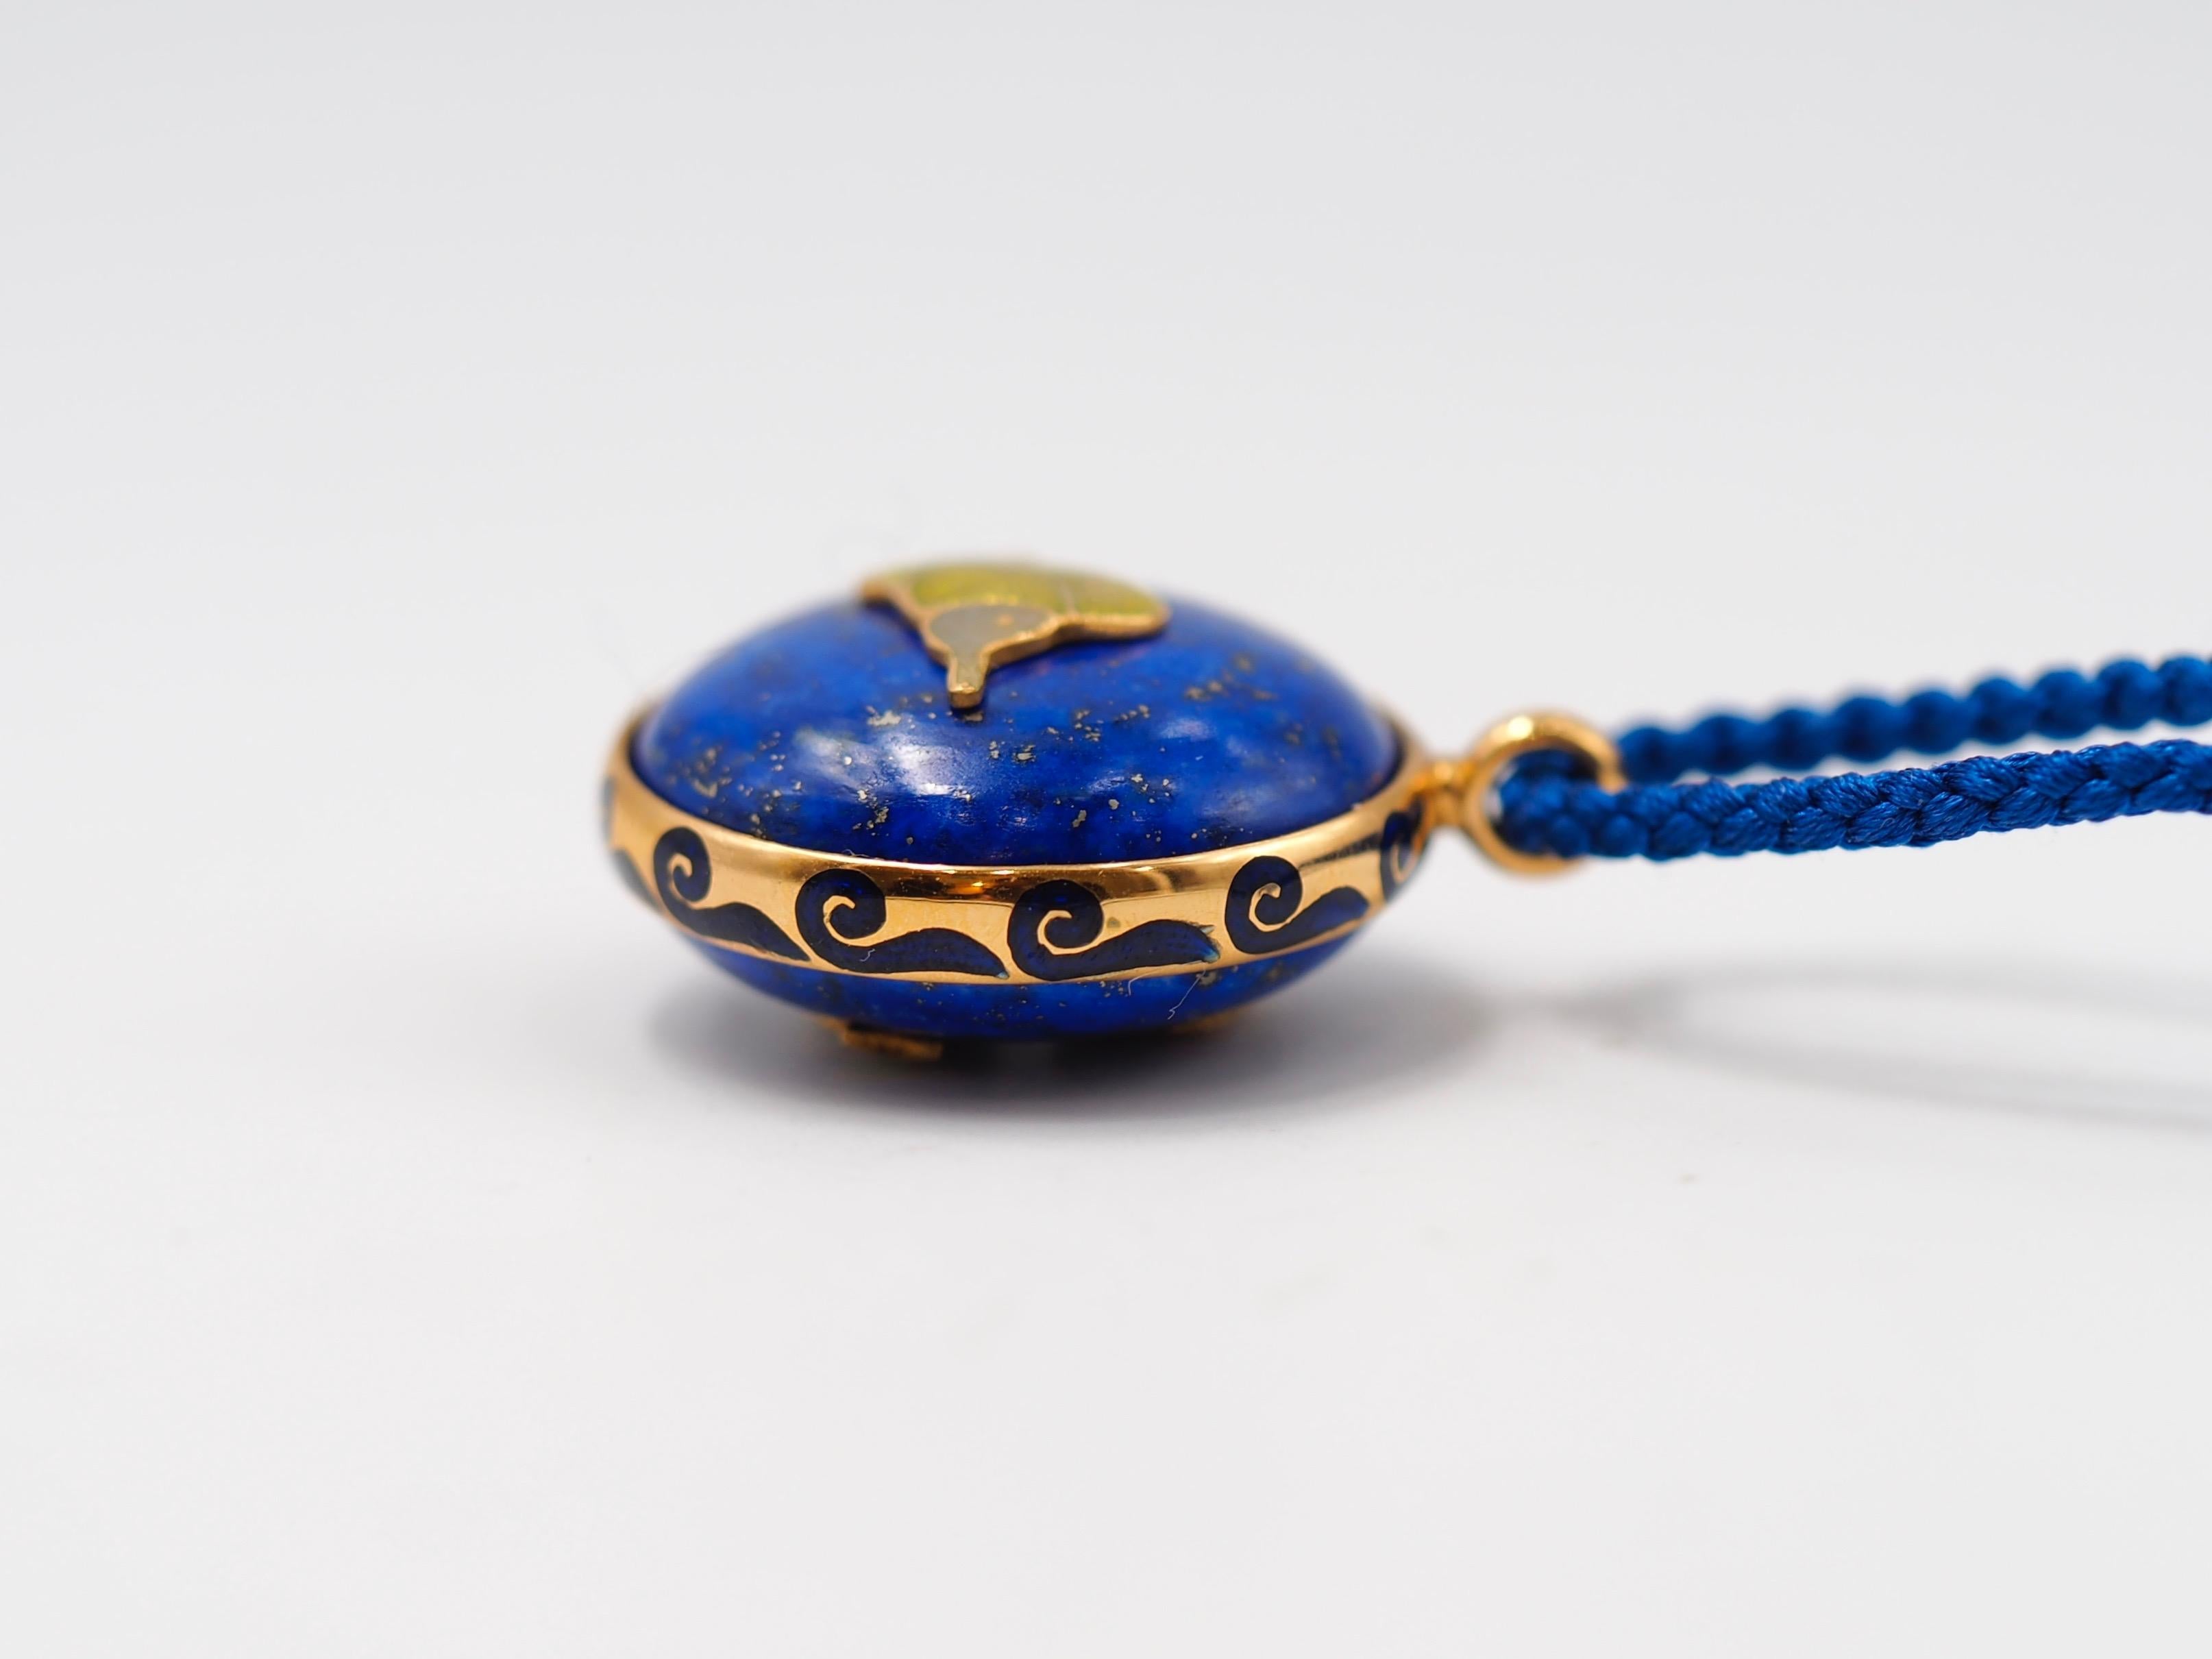 Cabochon Scrives Lapis Lazuli Double Side Fish Mina Kari Enamel 23 Karat Gold Pendant